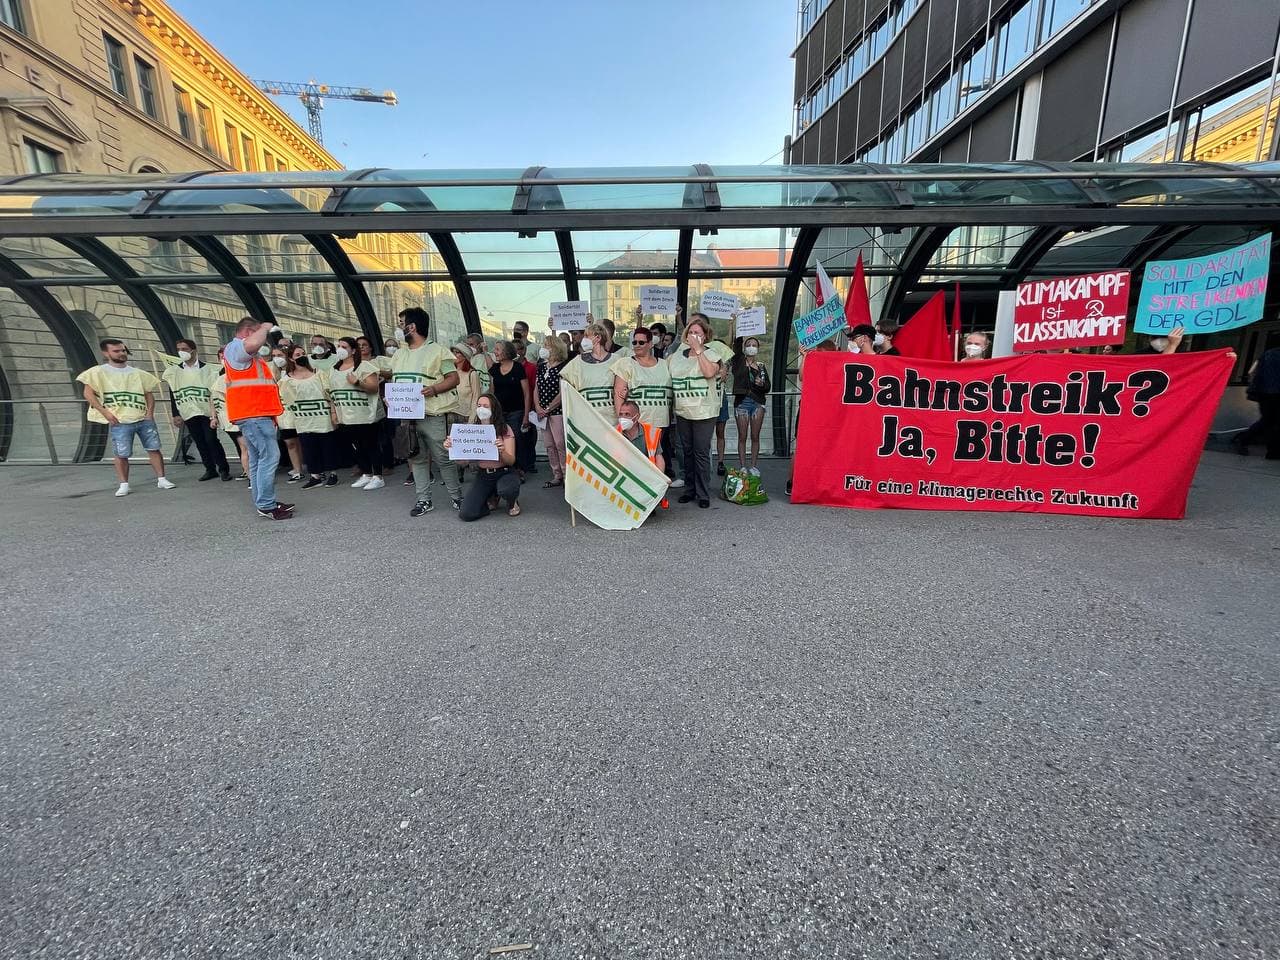 Bahn-Streikende solidarisieren sich mit Gorillas-Lieferant:innen und spenden für Streikkasse!